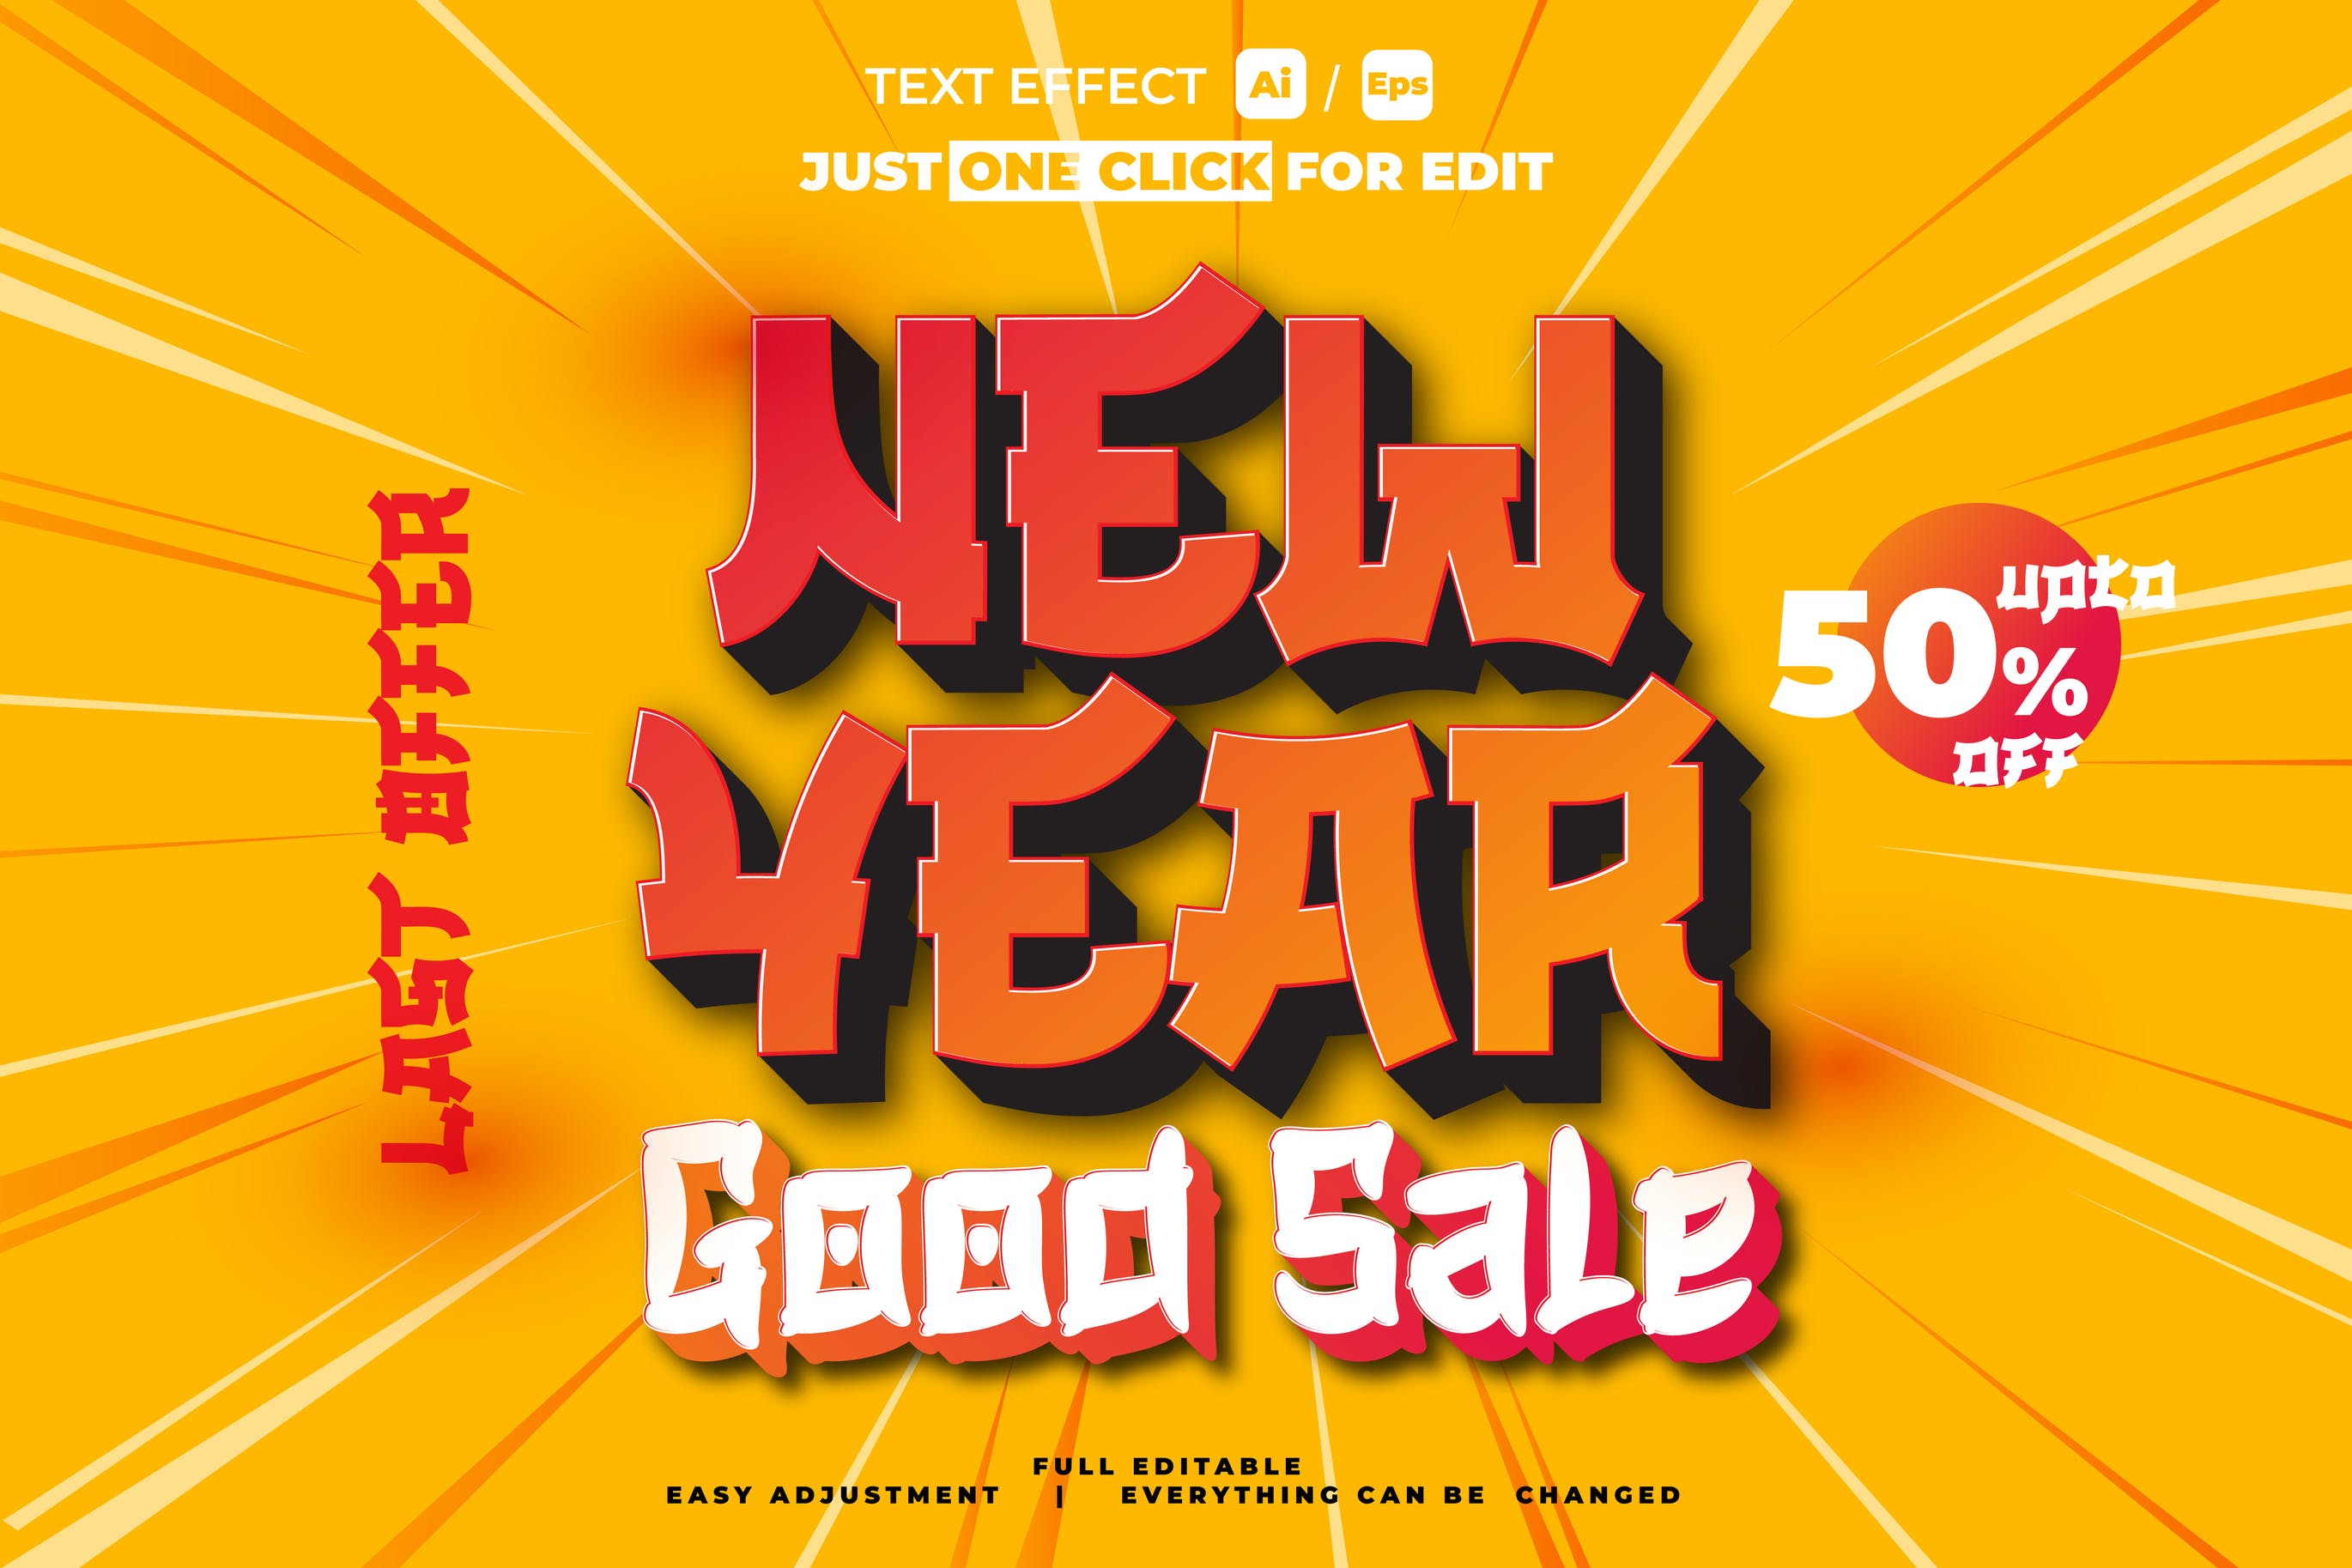 新年销售文本效果矢量素材 Text Effect New Year Sale 设计素材 第1张